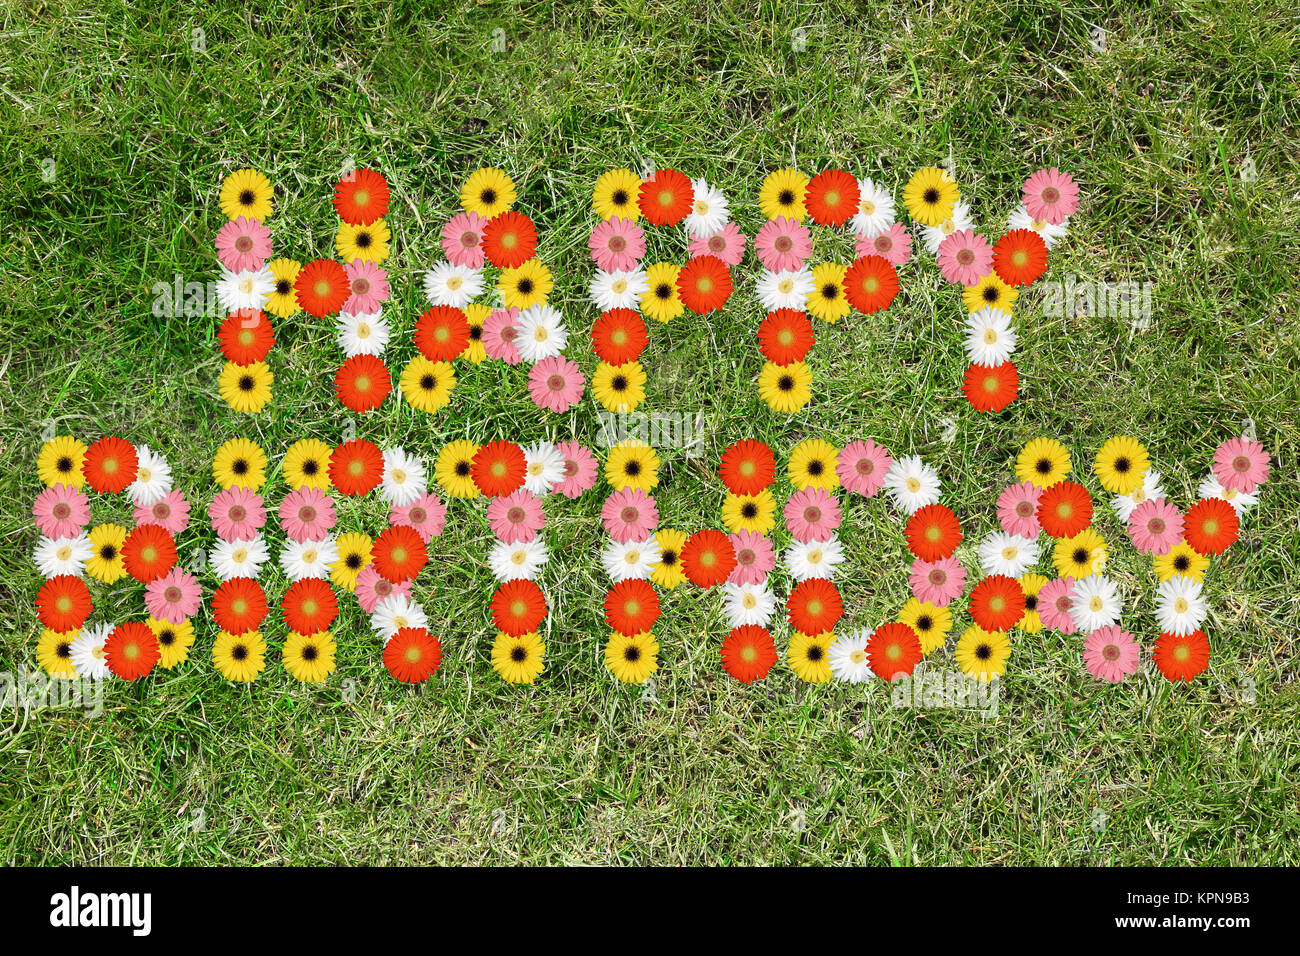 Herzlichen Glückwunsch zum Geburtstag, Jahrestag der Blume gras wiese Stockfoto